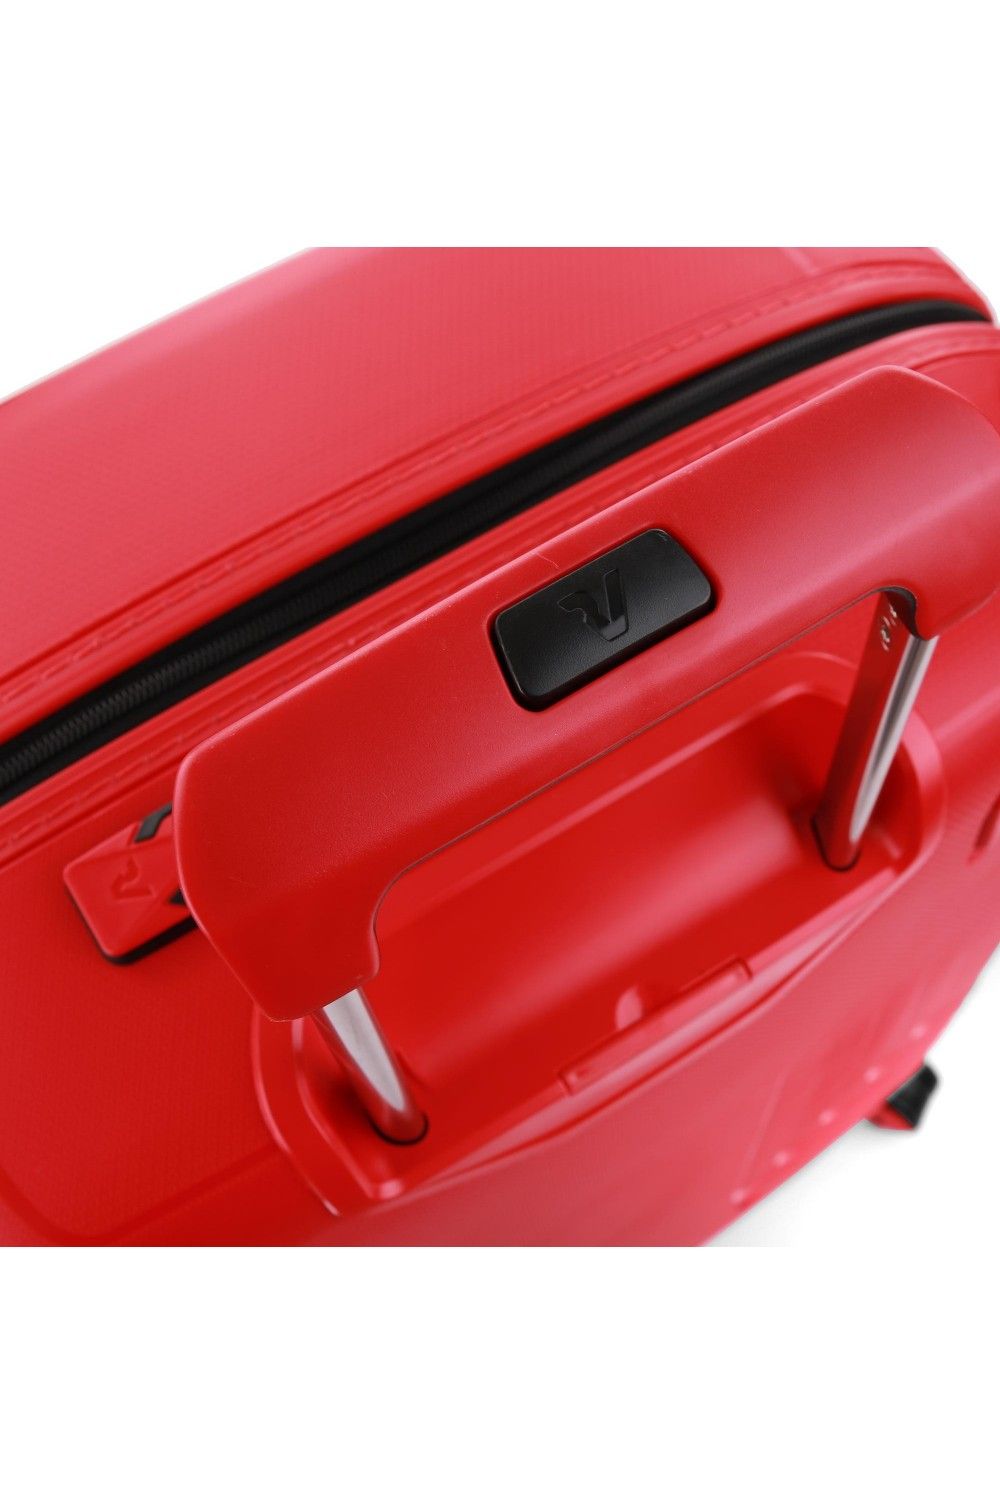 Suitcase Roncato Ypsilon 4 78cm Large 4 wheel expandable